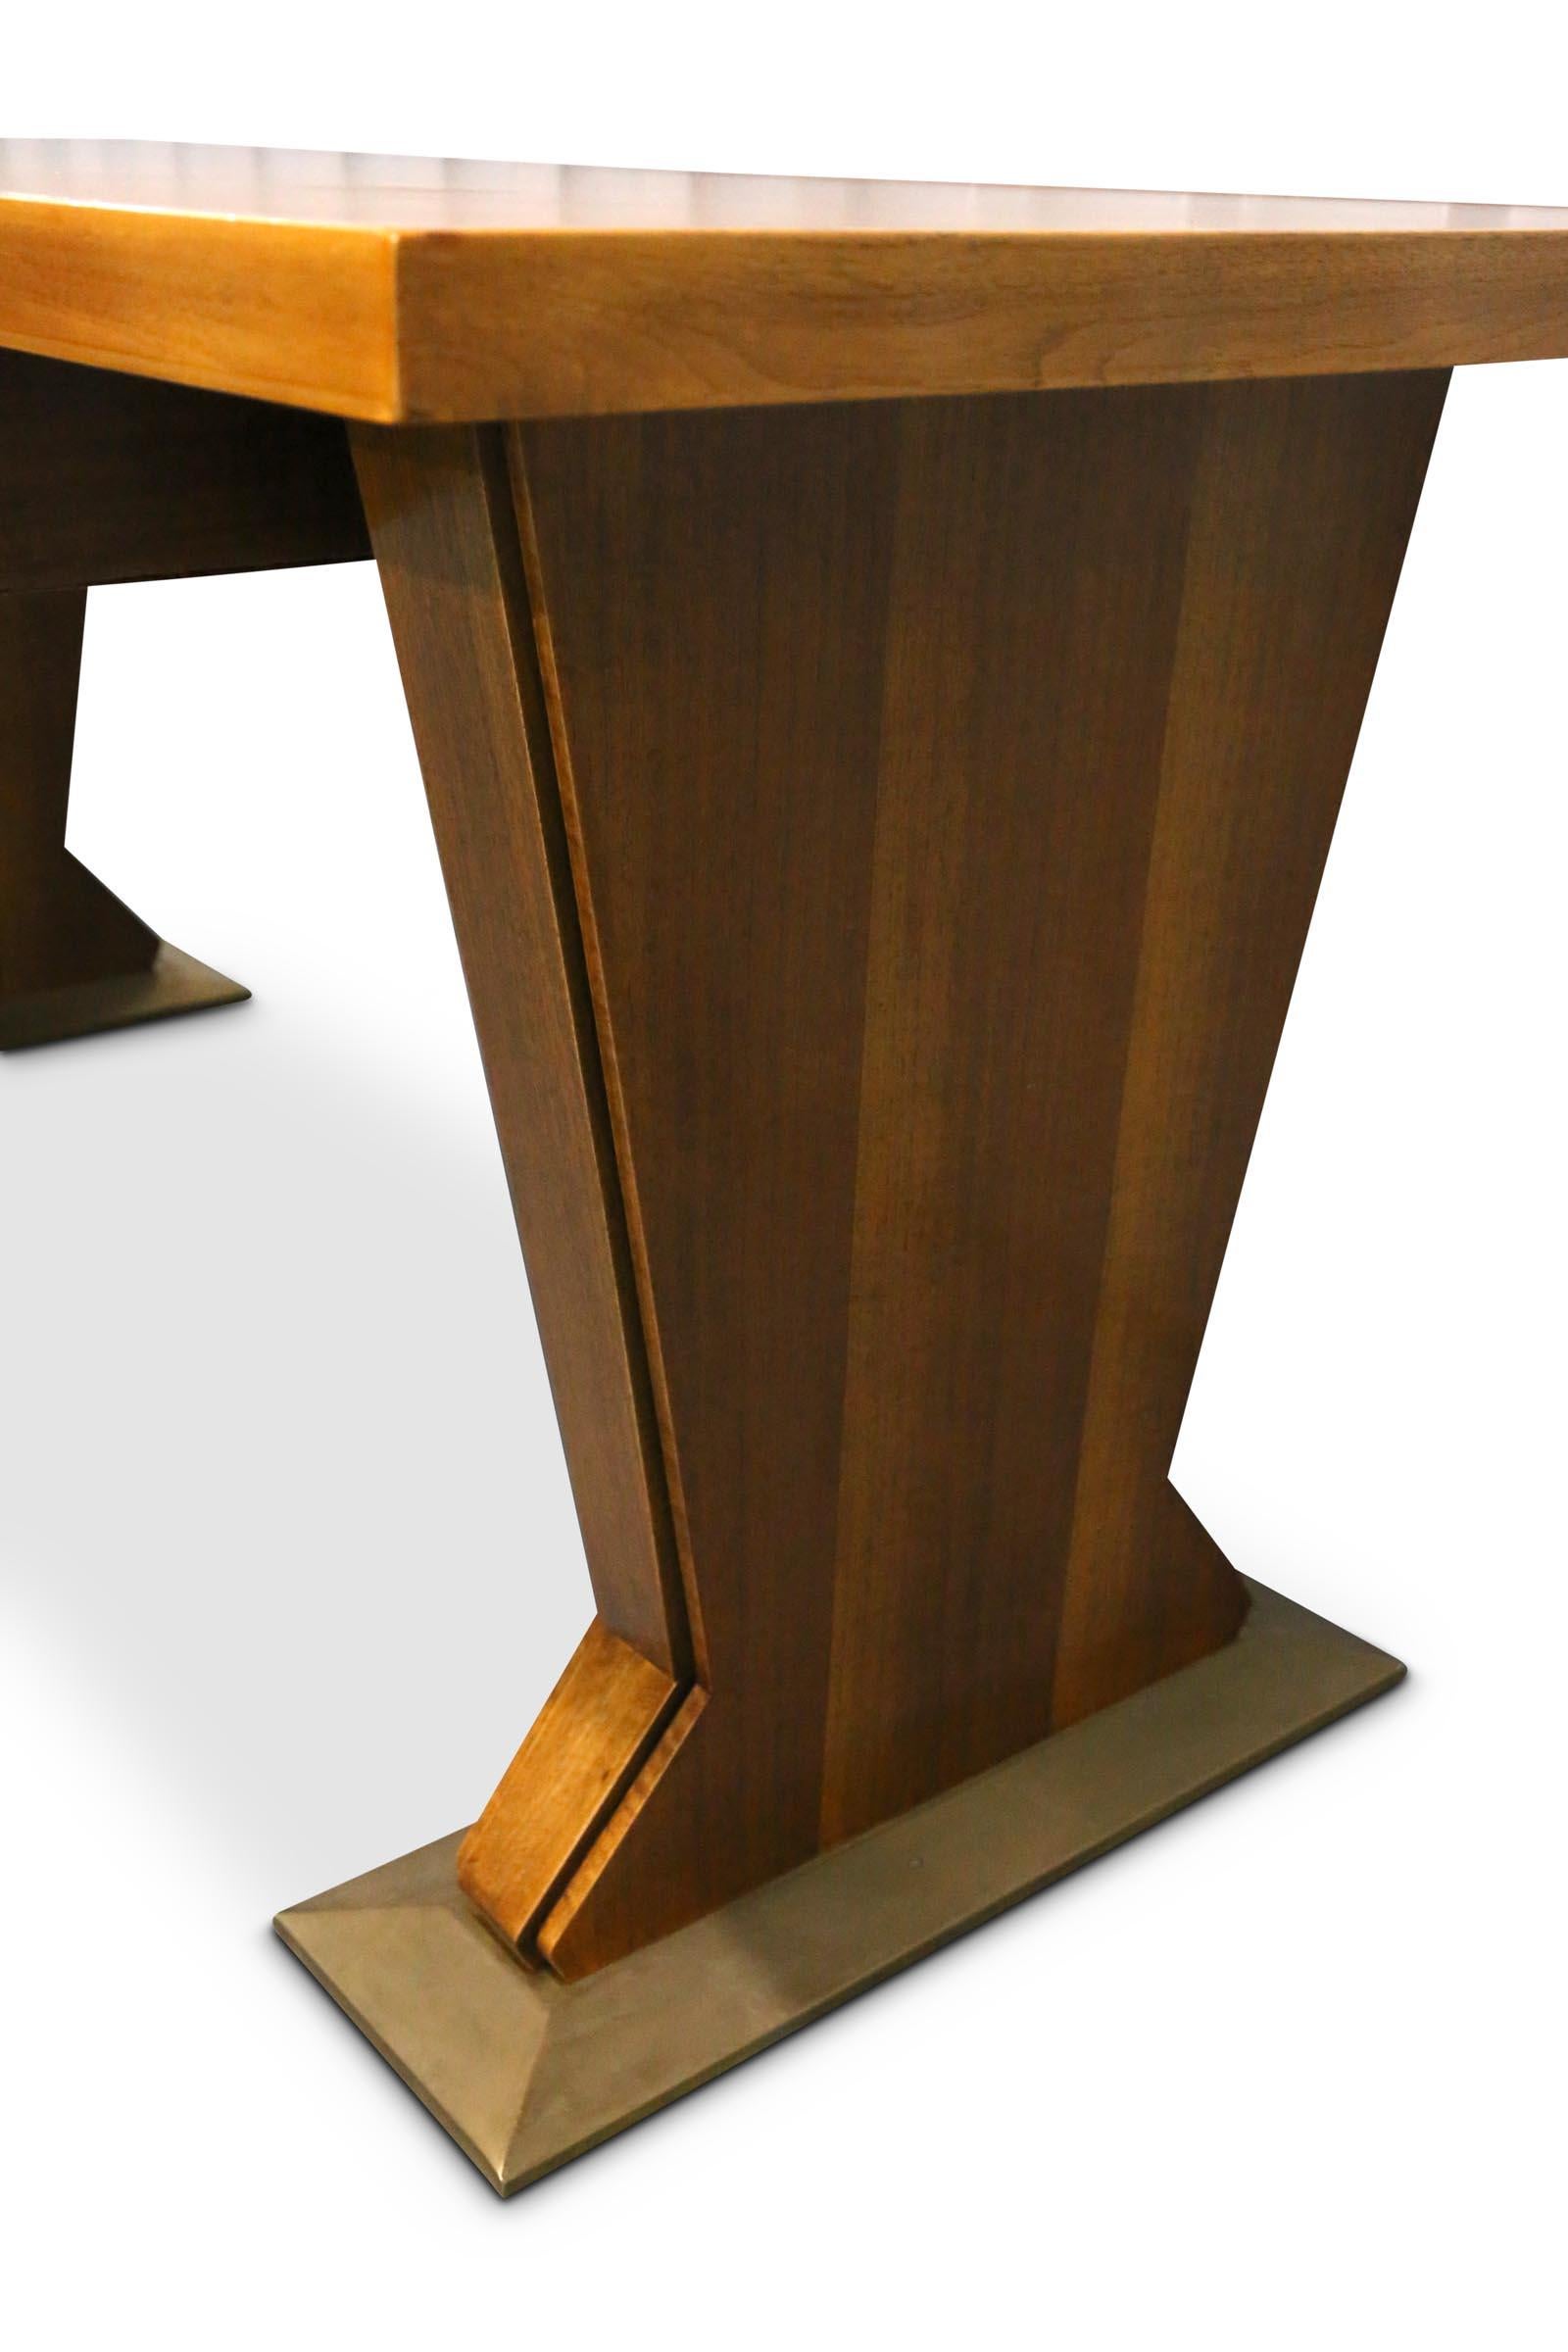 Mid-Century Modern Magnificent Italian Desk Table Osvaldo Borsani Walnut Leather, Midcentury, 1940s